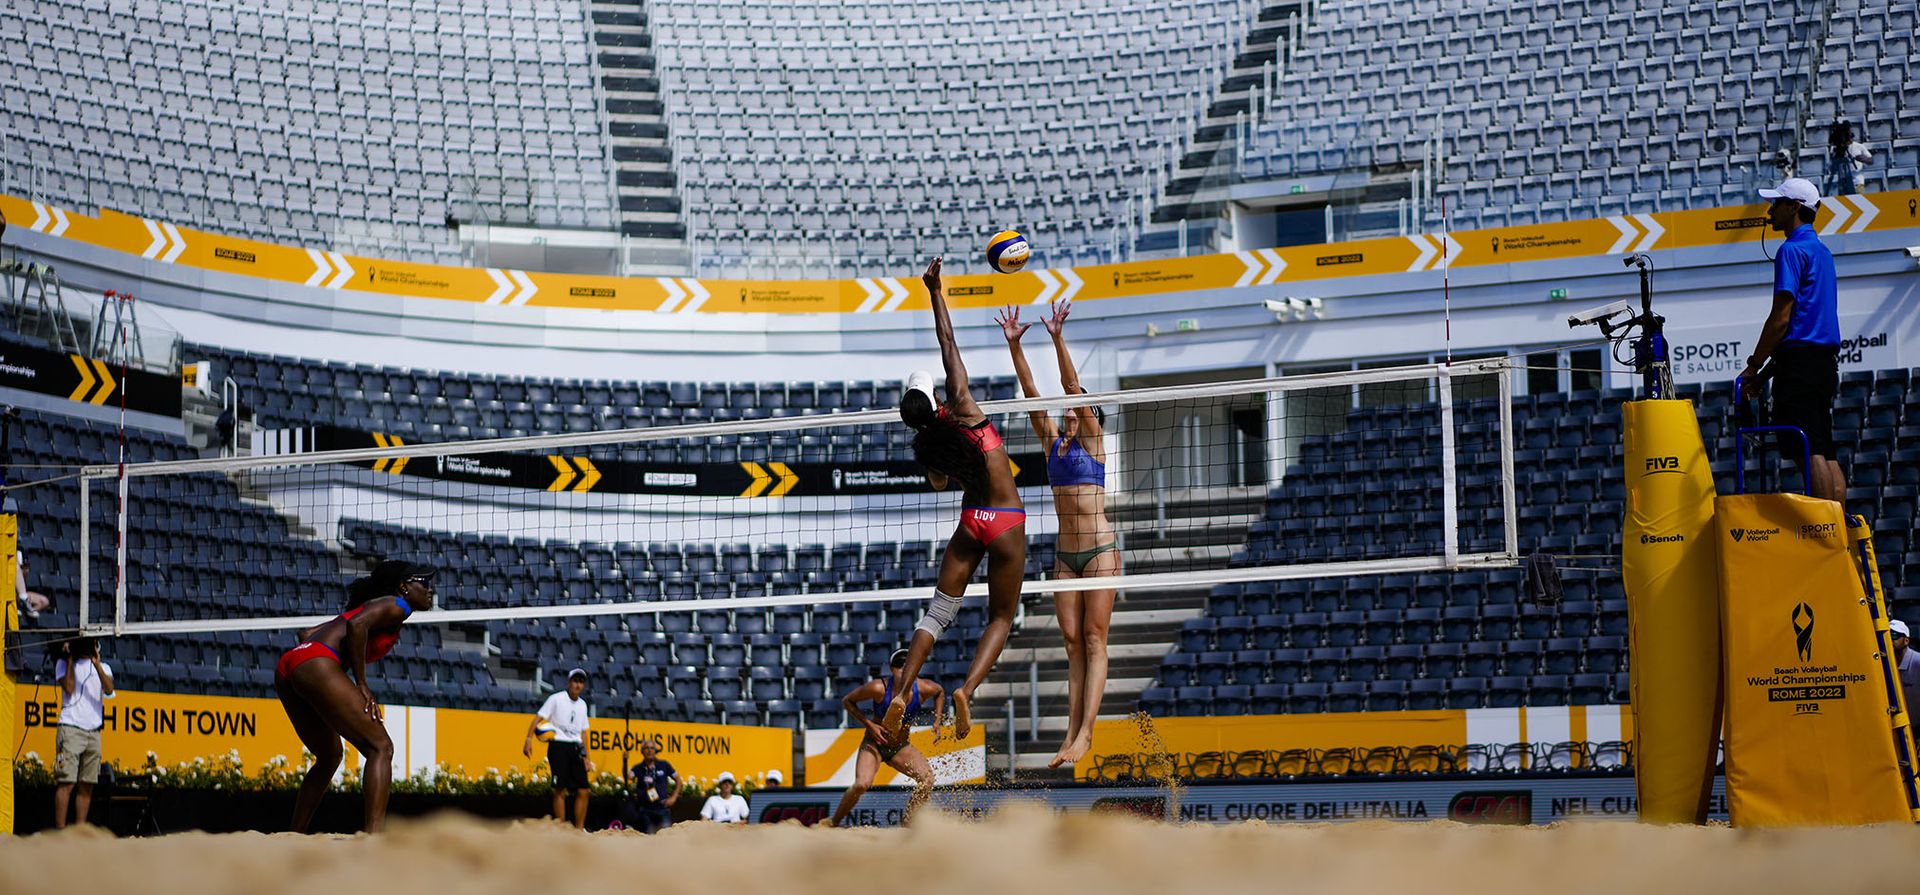 Terese Cannon de Estados Unidos, derecha, y Lady Echeverría de Cuba, segunda desde la derecha, en acción durante su partido en el Campeonato Mundial de Voleibol de Playa en Roma.